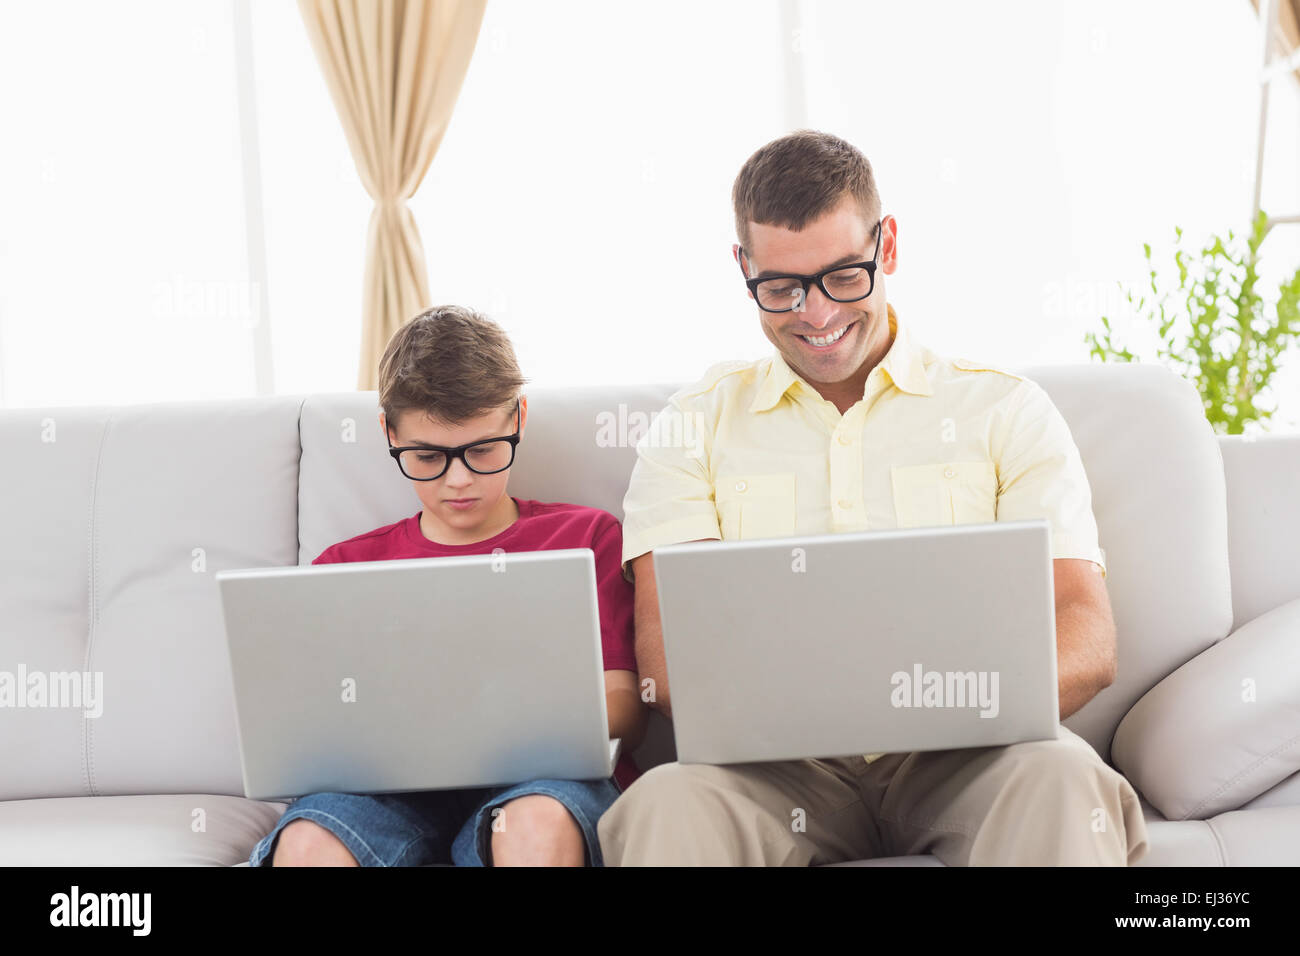 Père et fils portant des lunettes nouveauté while using laptop Banque D'Images